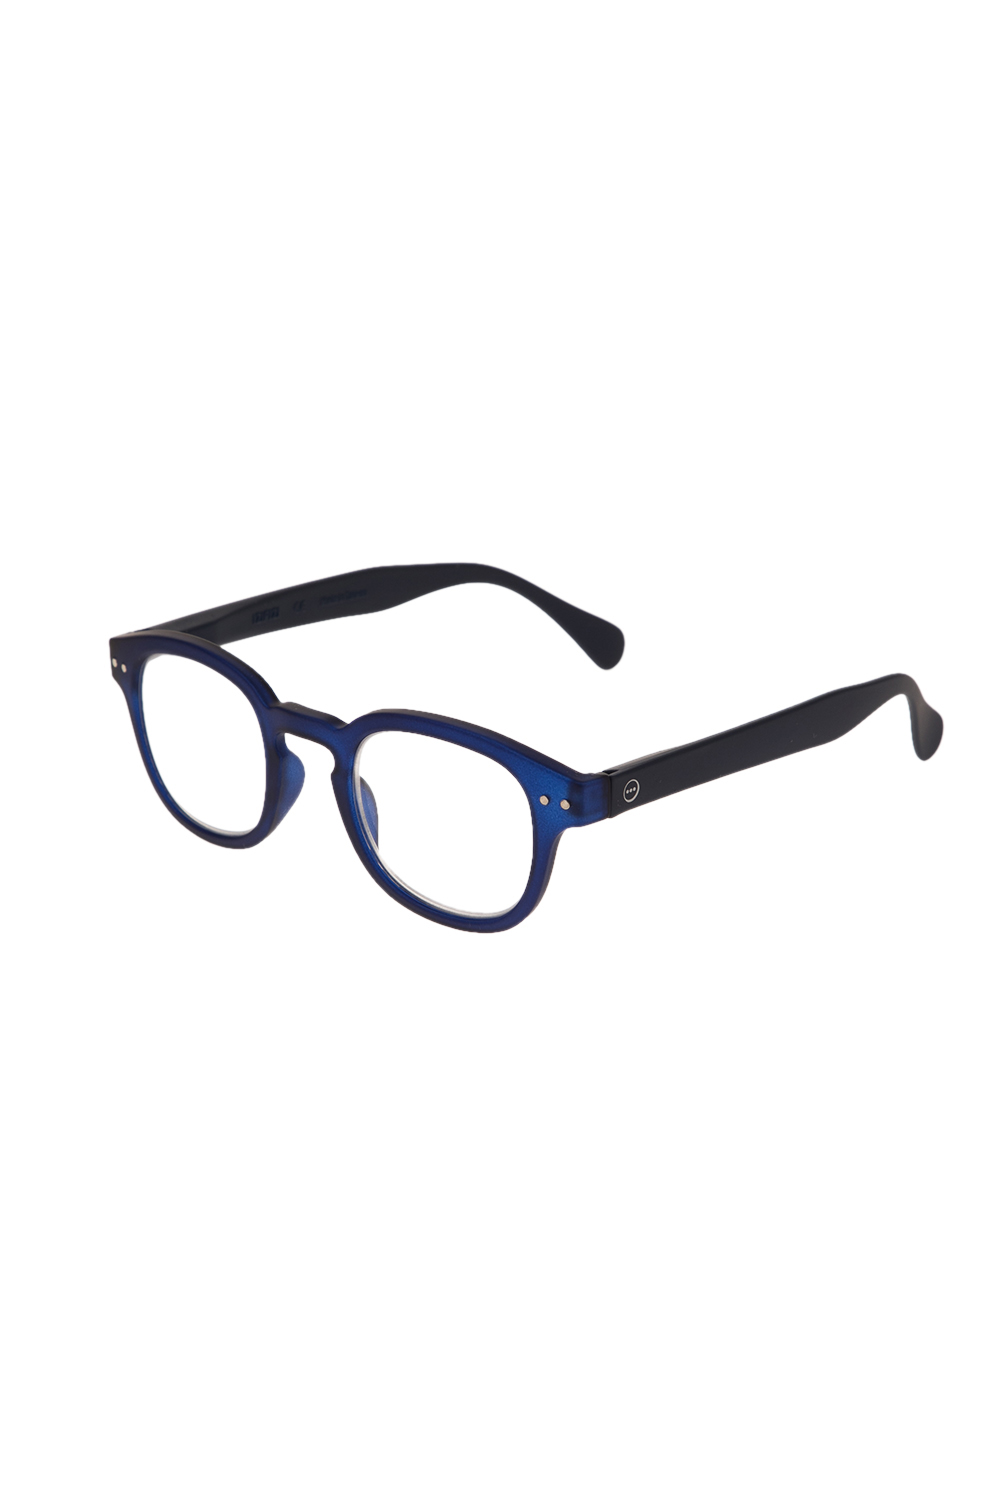 IZIPIZI – Unisex γυαλιά οράσεως IZIPIZI READING #C LIM/EDITION μπλε 1676836.0-0013